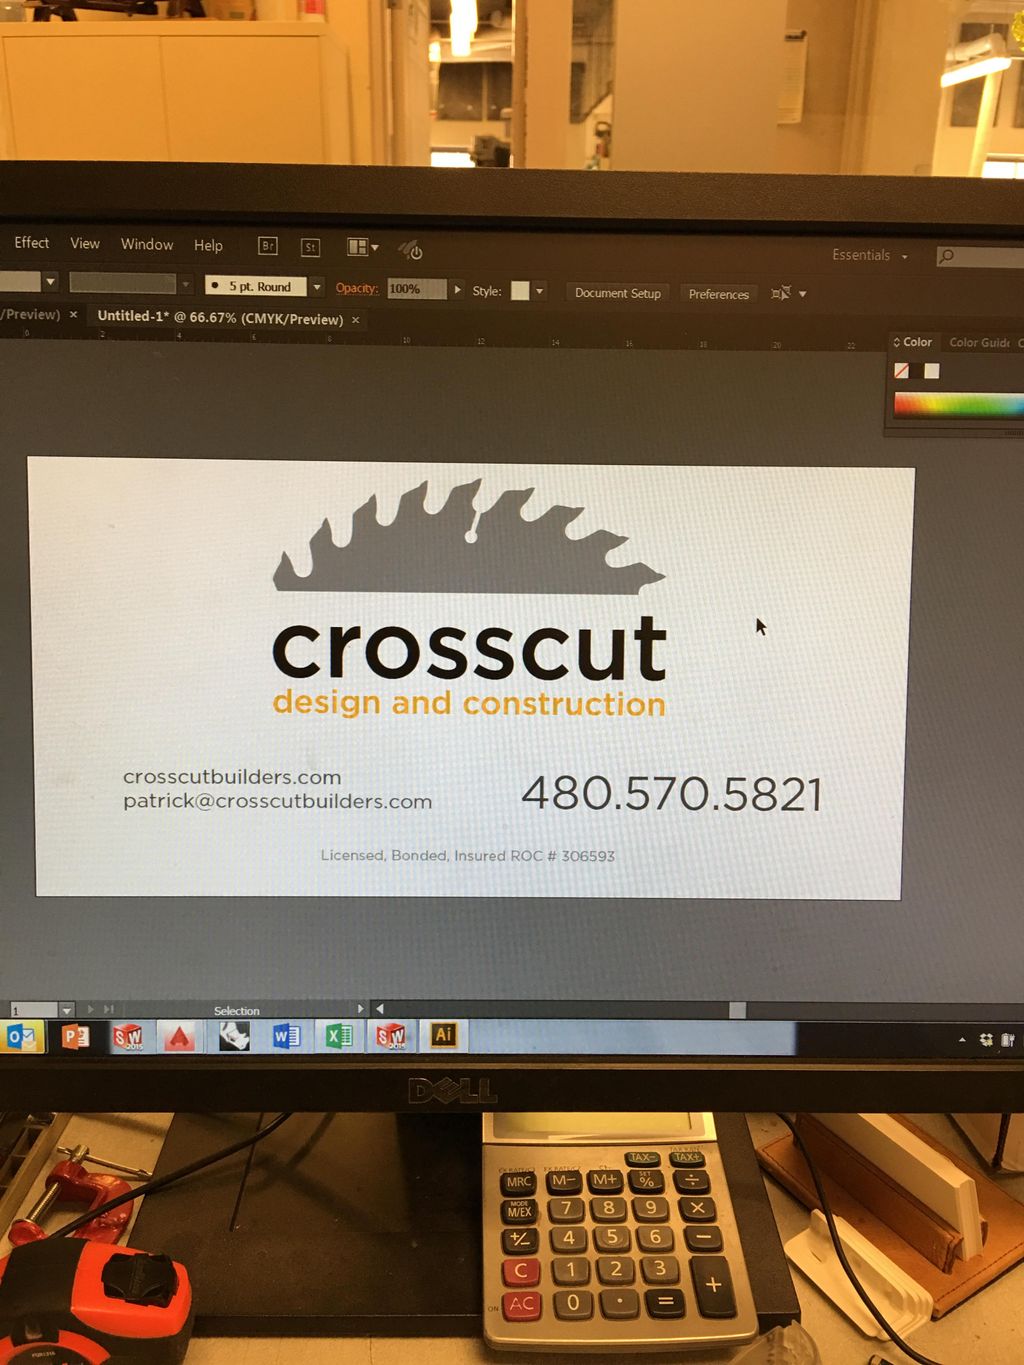 Crosscut Design & Construction